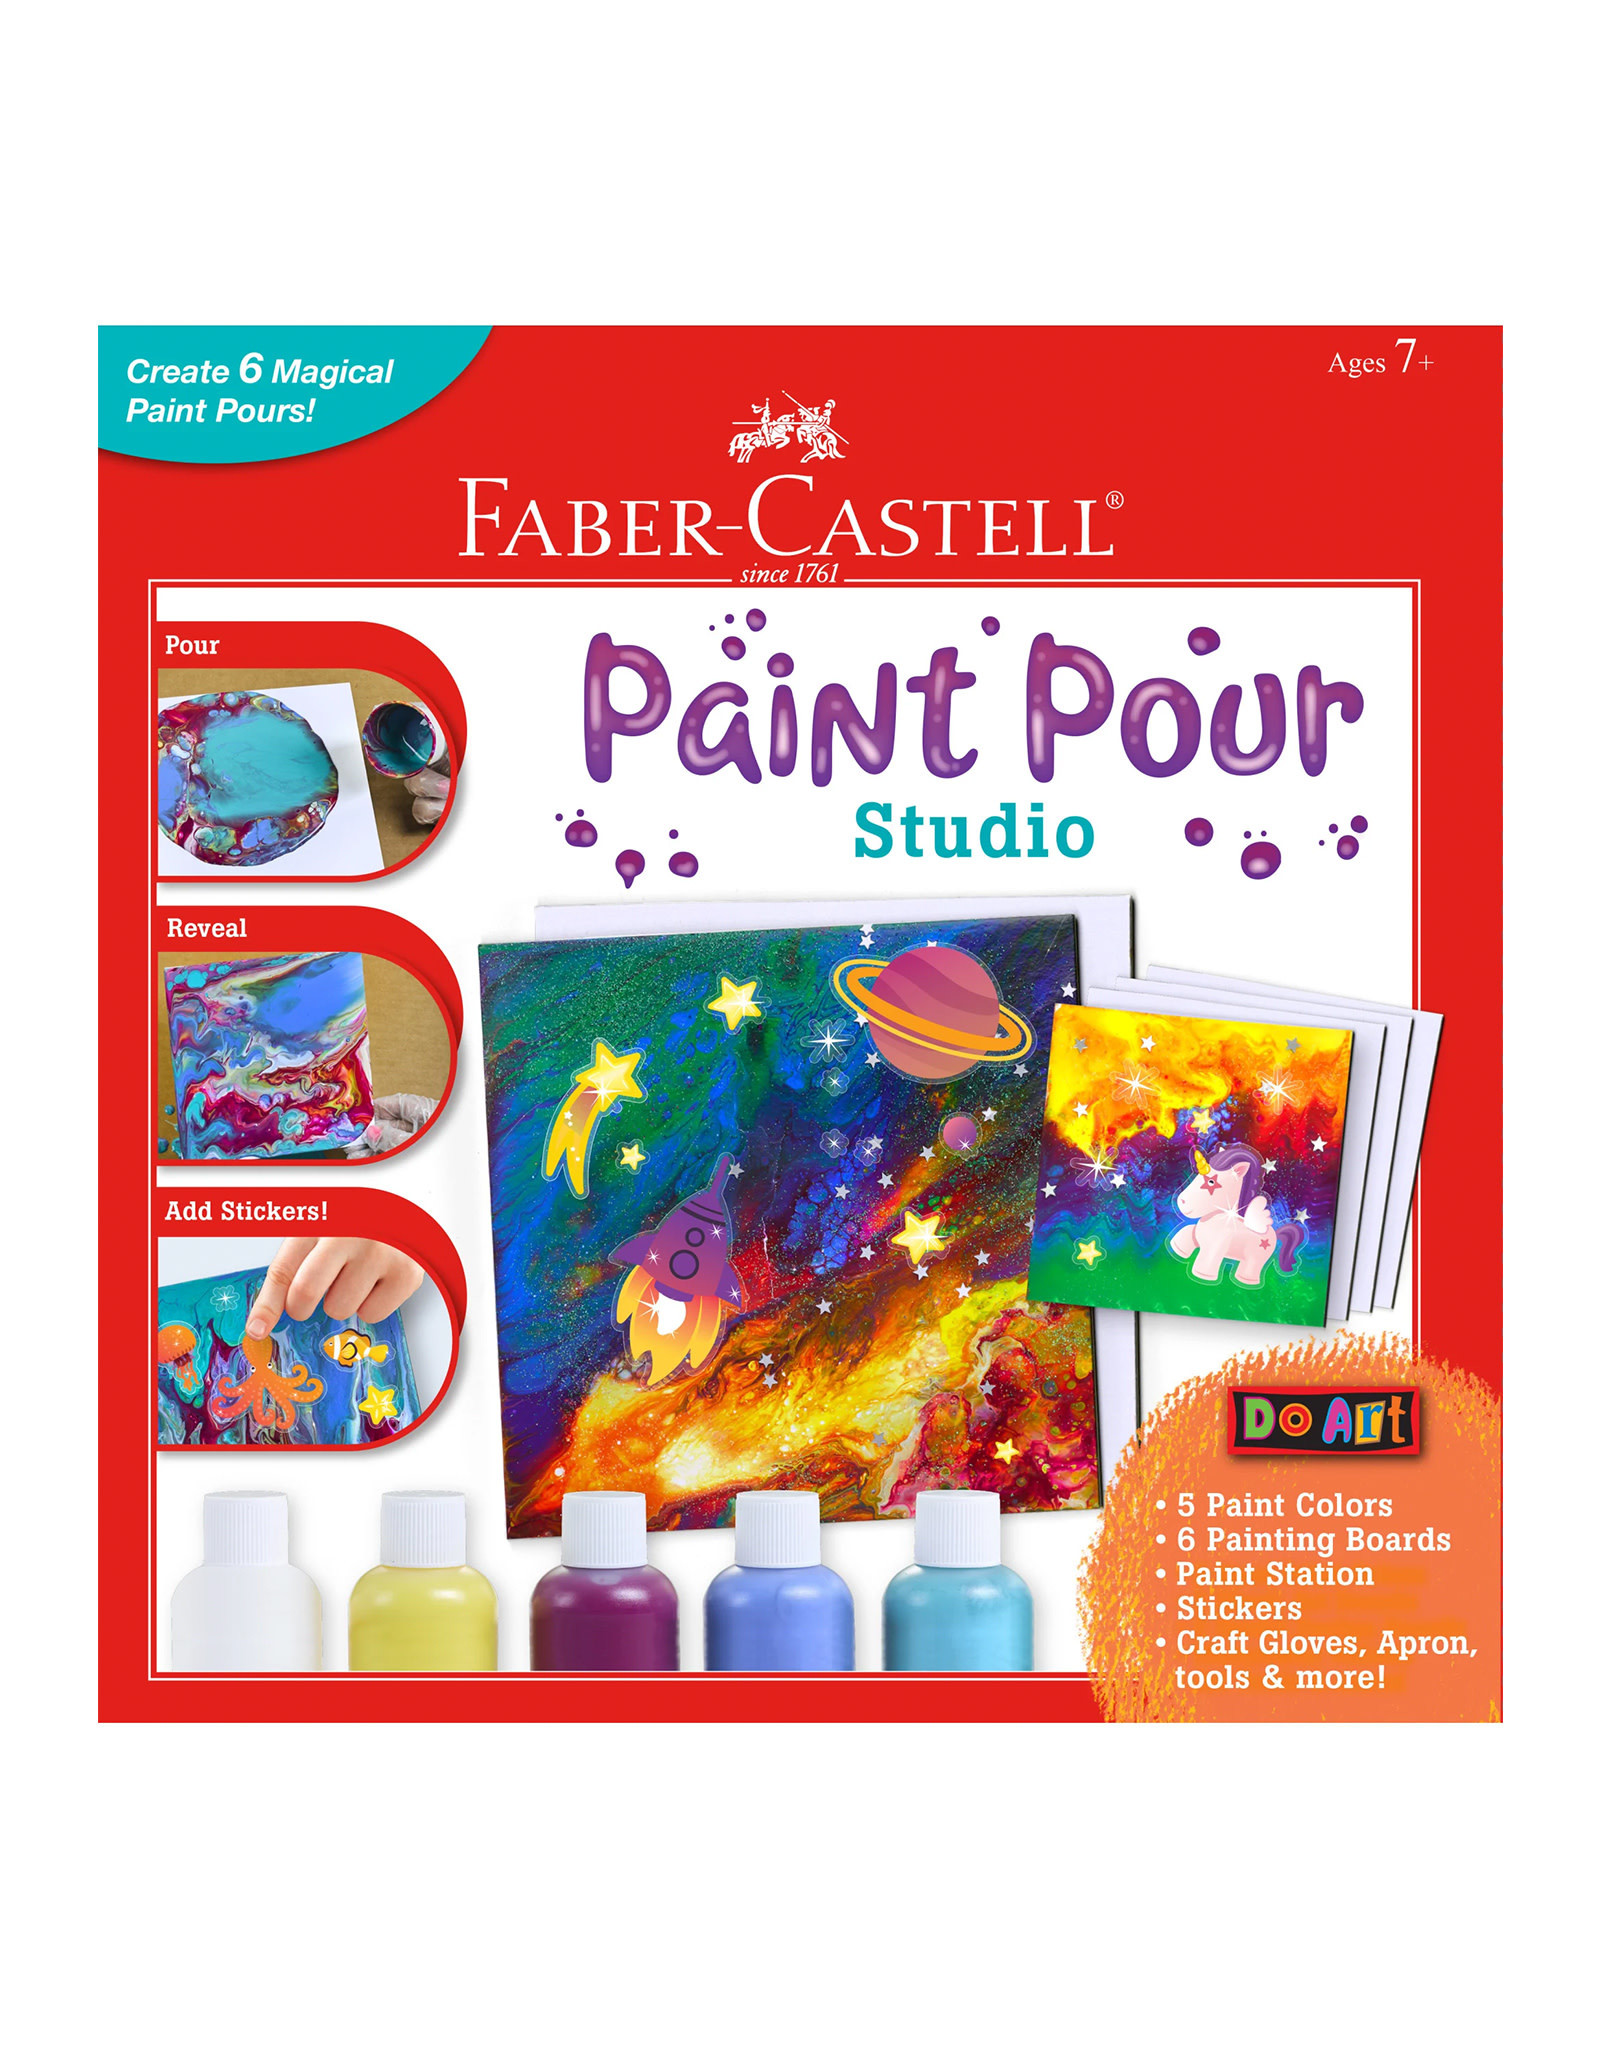 FABER-CASTELL Faber-Castell Do Art Paint Pour Studio